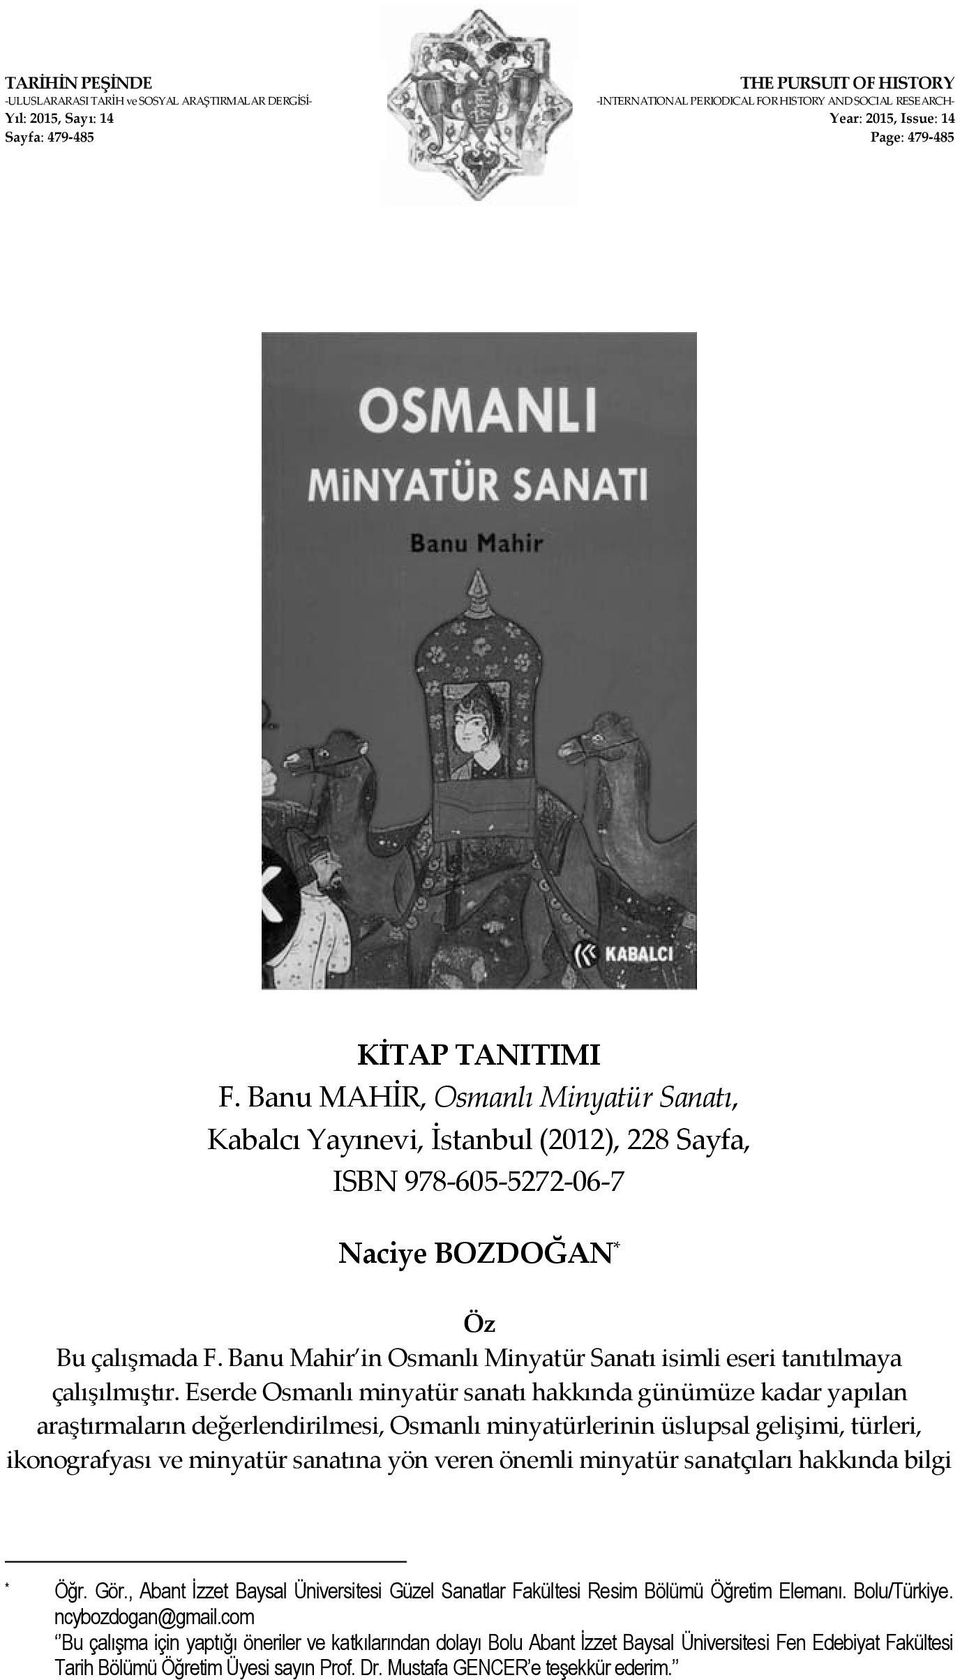 Banu Mahir in Osmanlı Minyatür Sanatı isimli eseri tanıtılmaya çalışılmıştır.